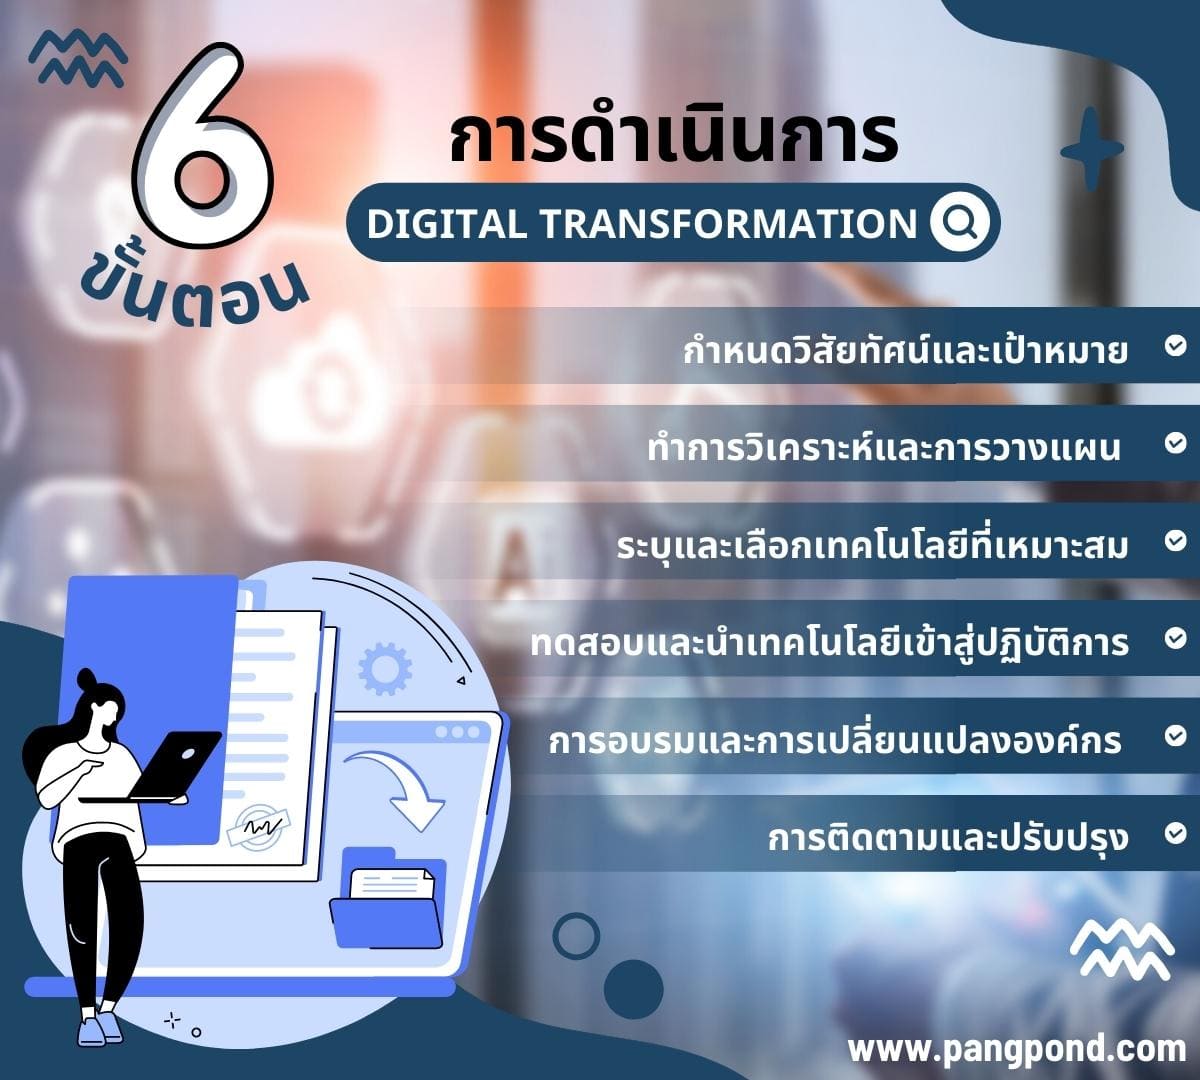 6 การดำเนินการ Digital Transformation